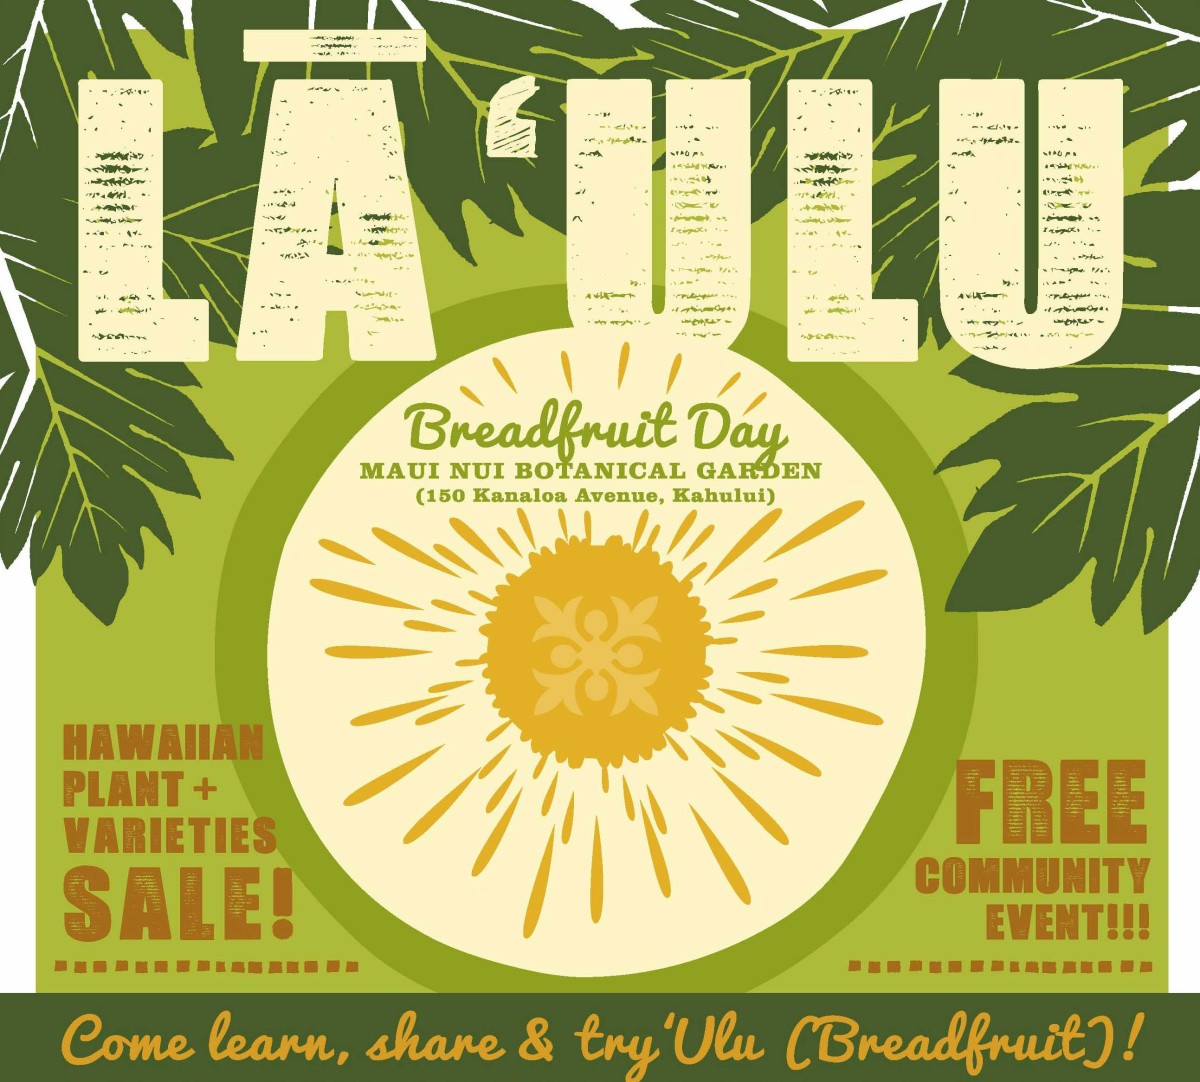 La Ulu Breadfruit Day 2018